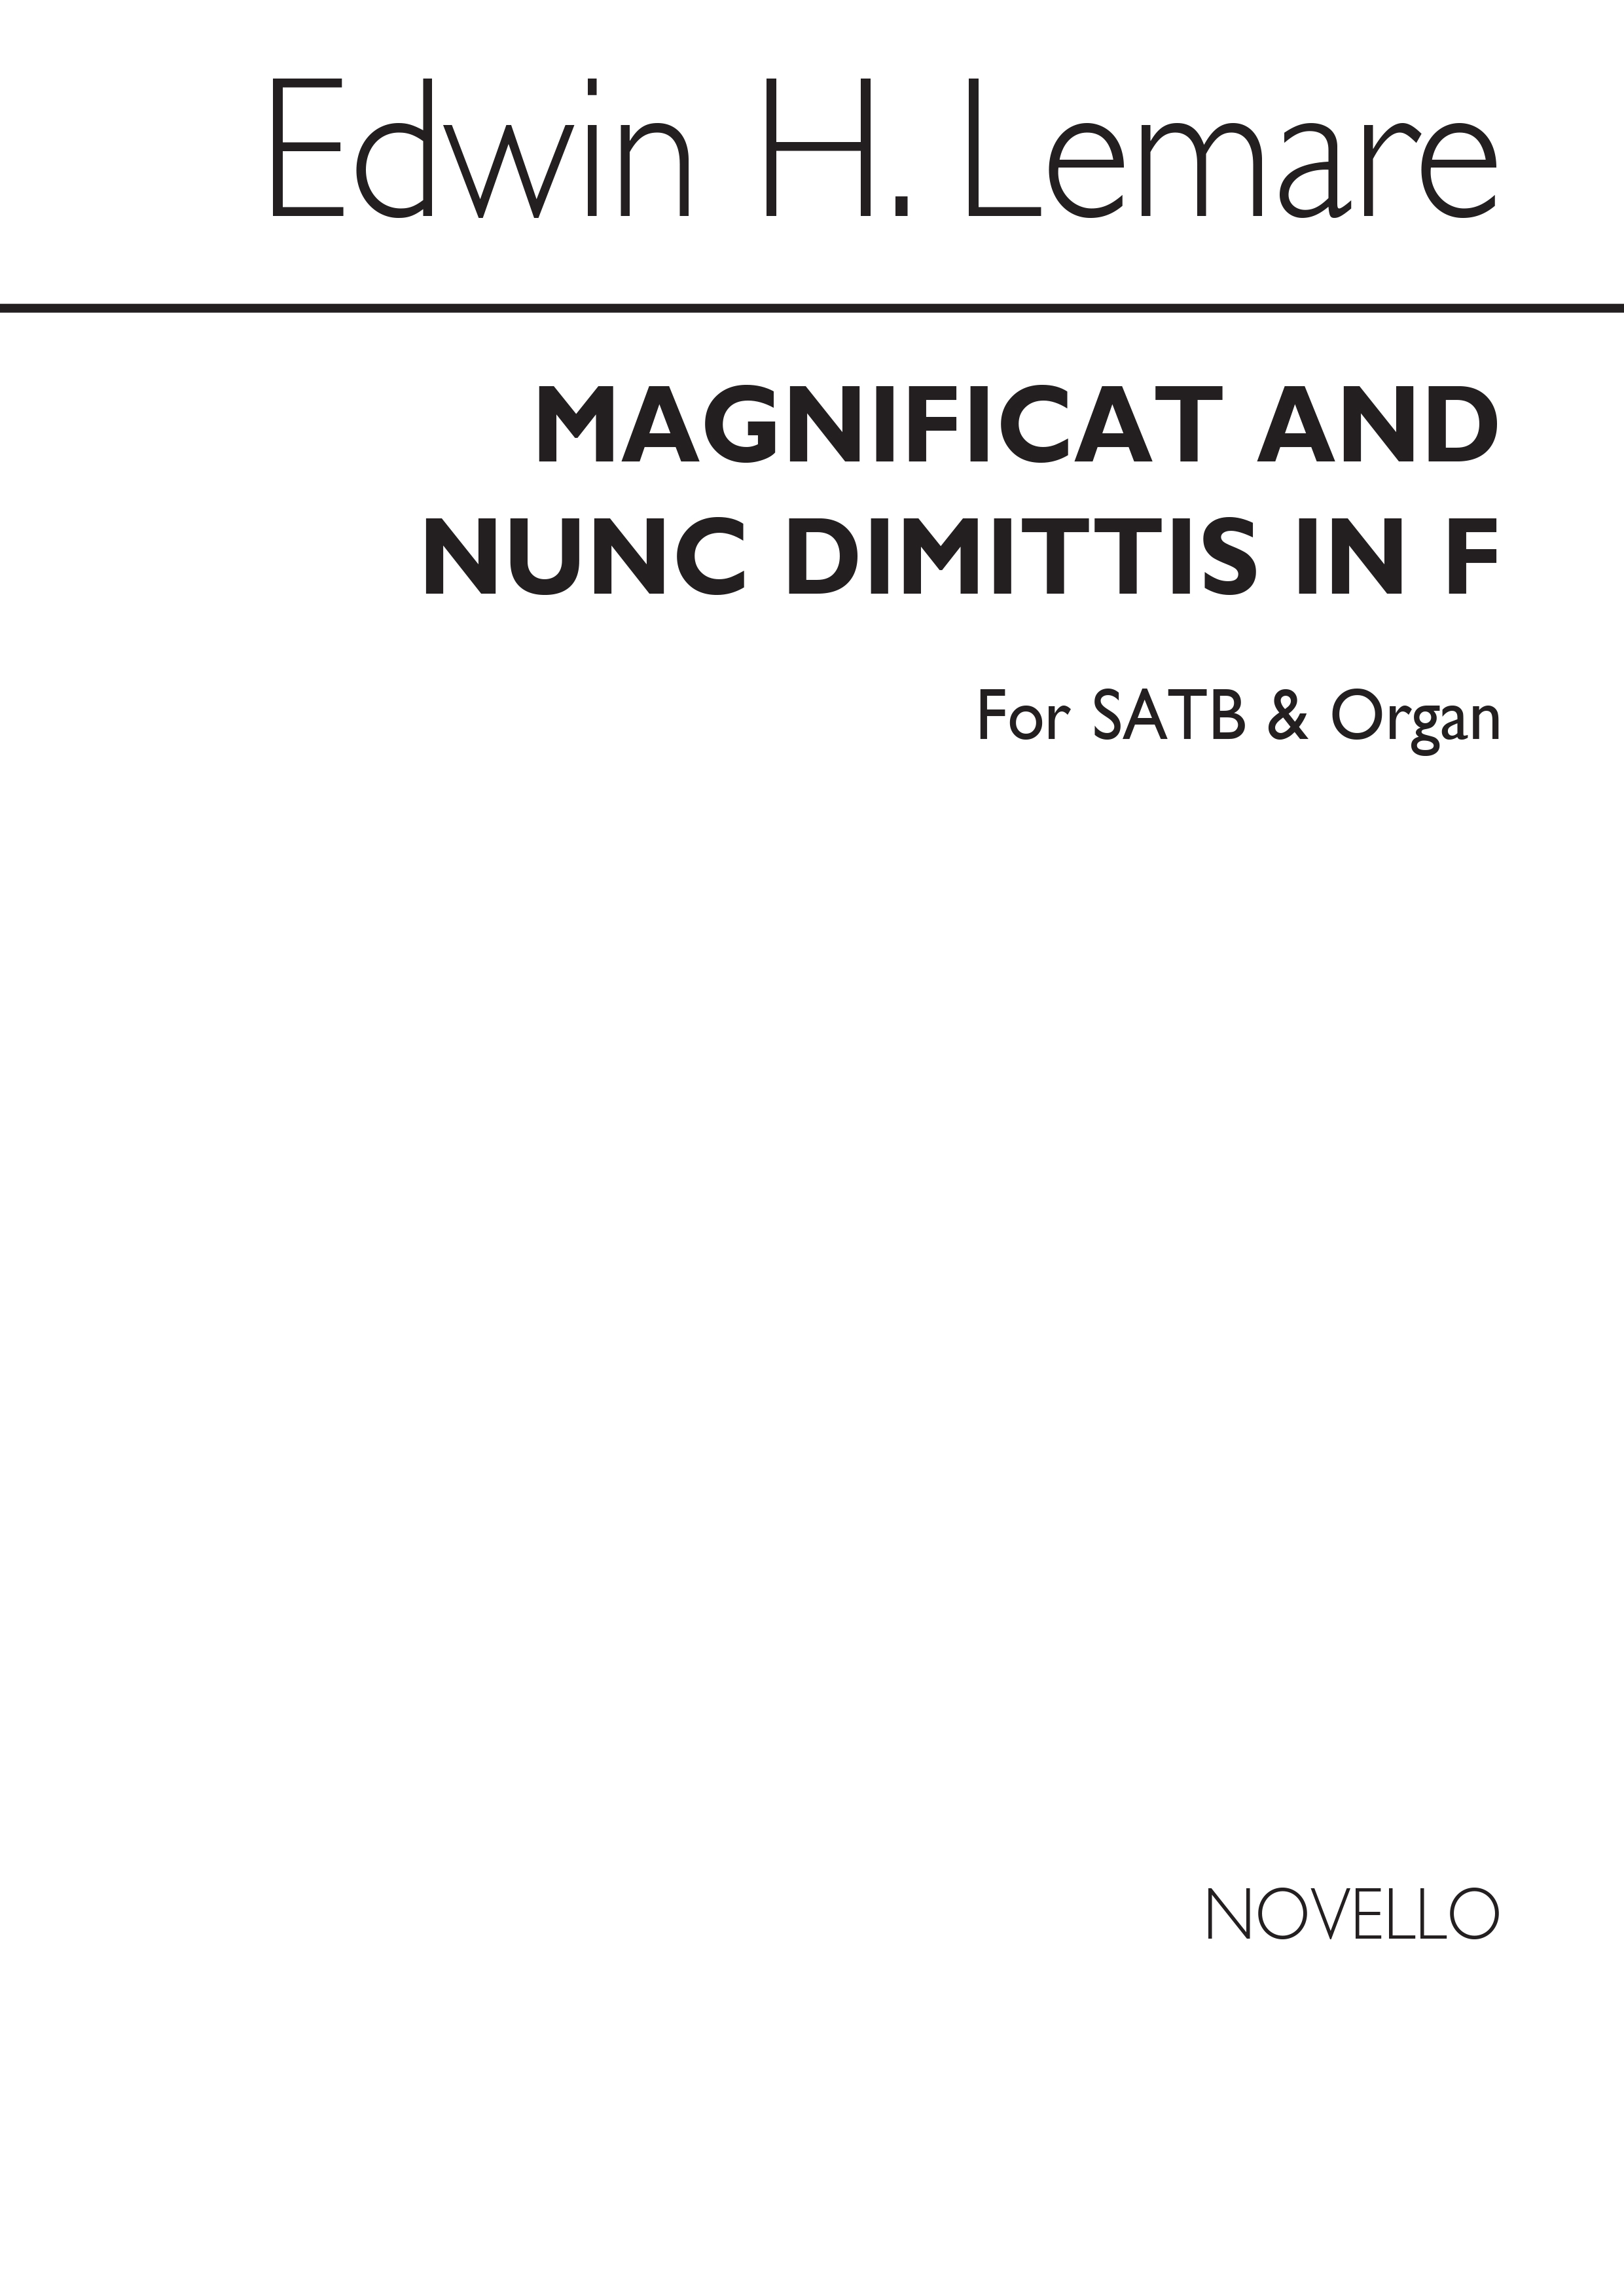 Edwin H. Lemare: Magnificat And Nunc Dimittis In F (Novello): SATB: Vocal Score